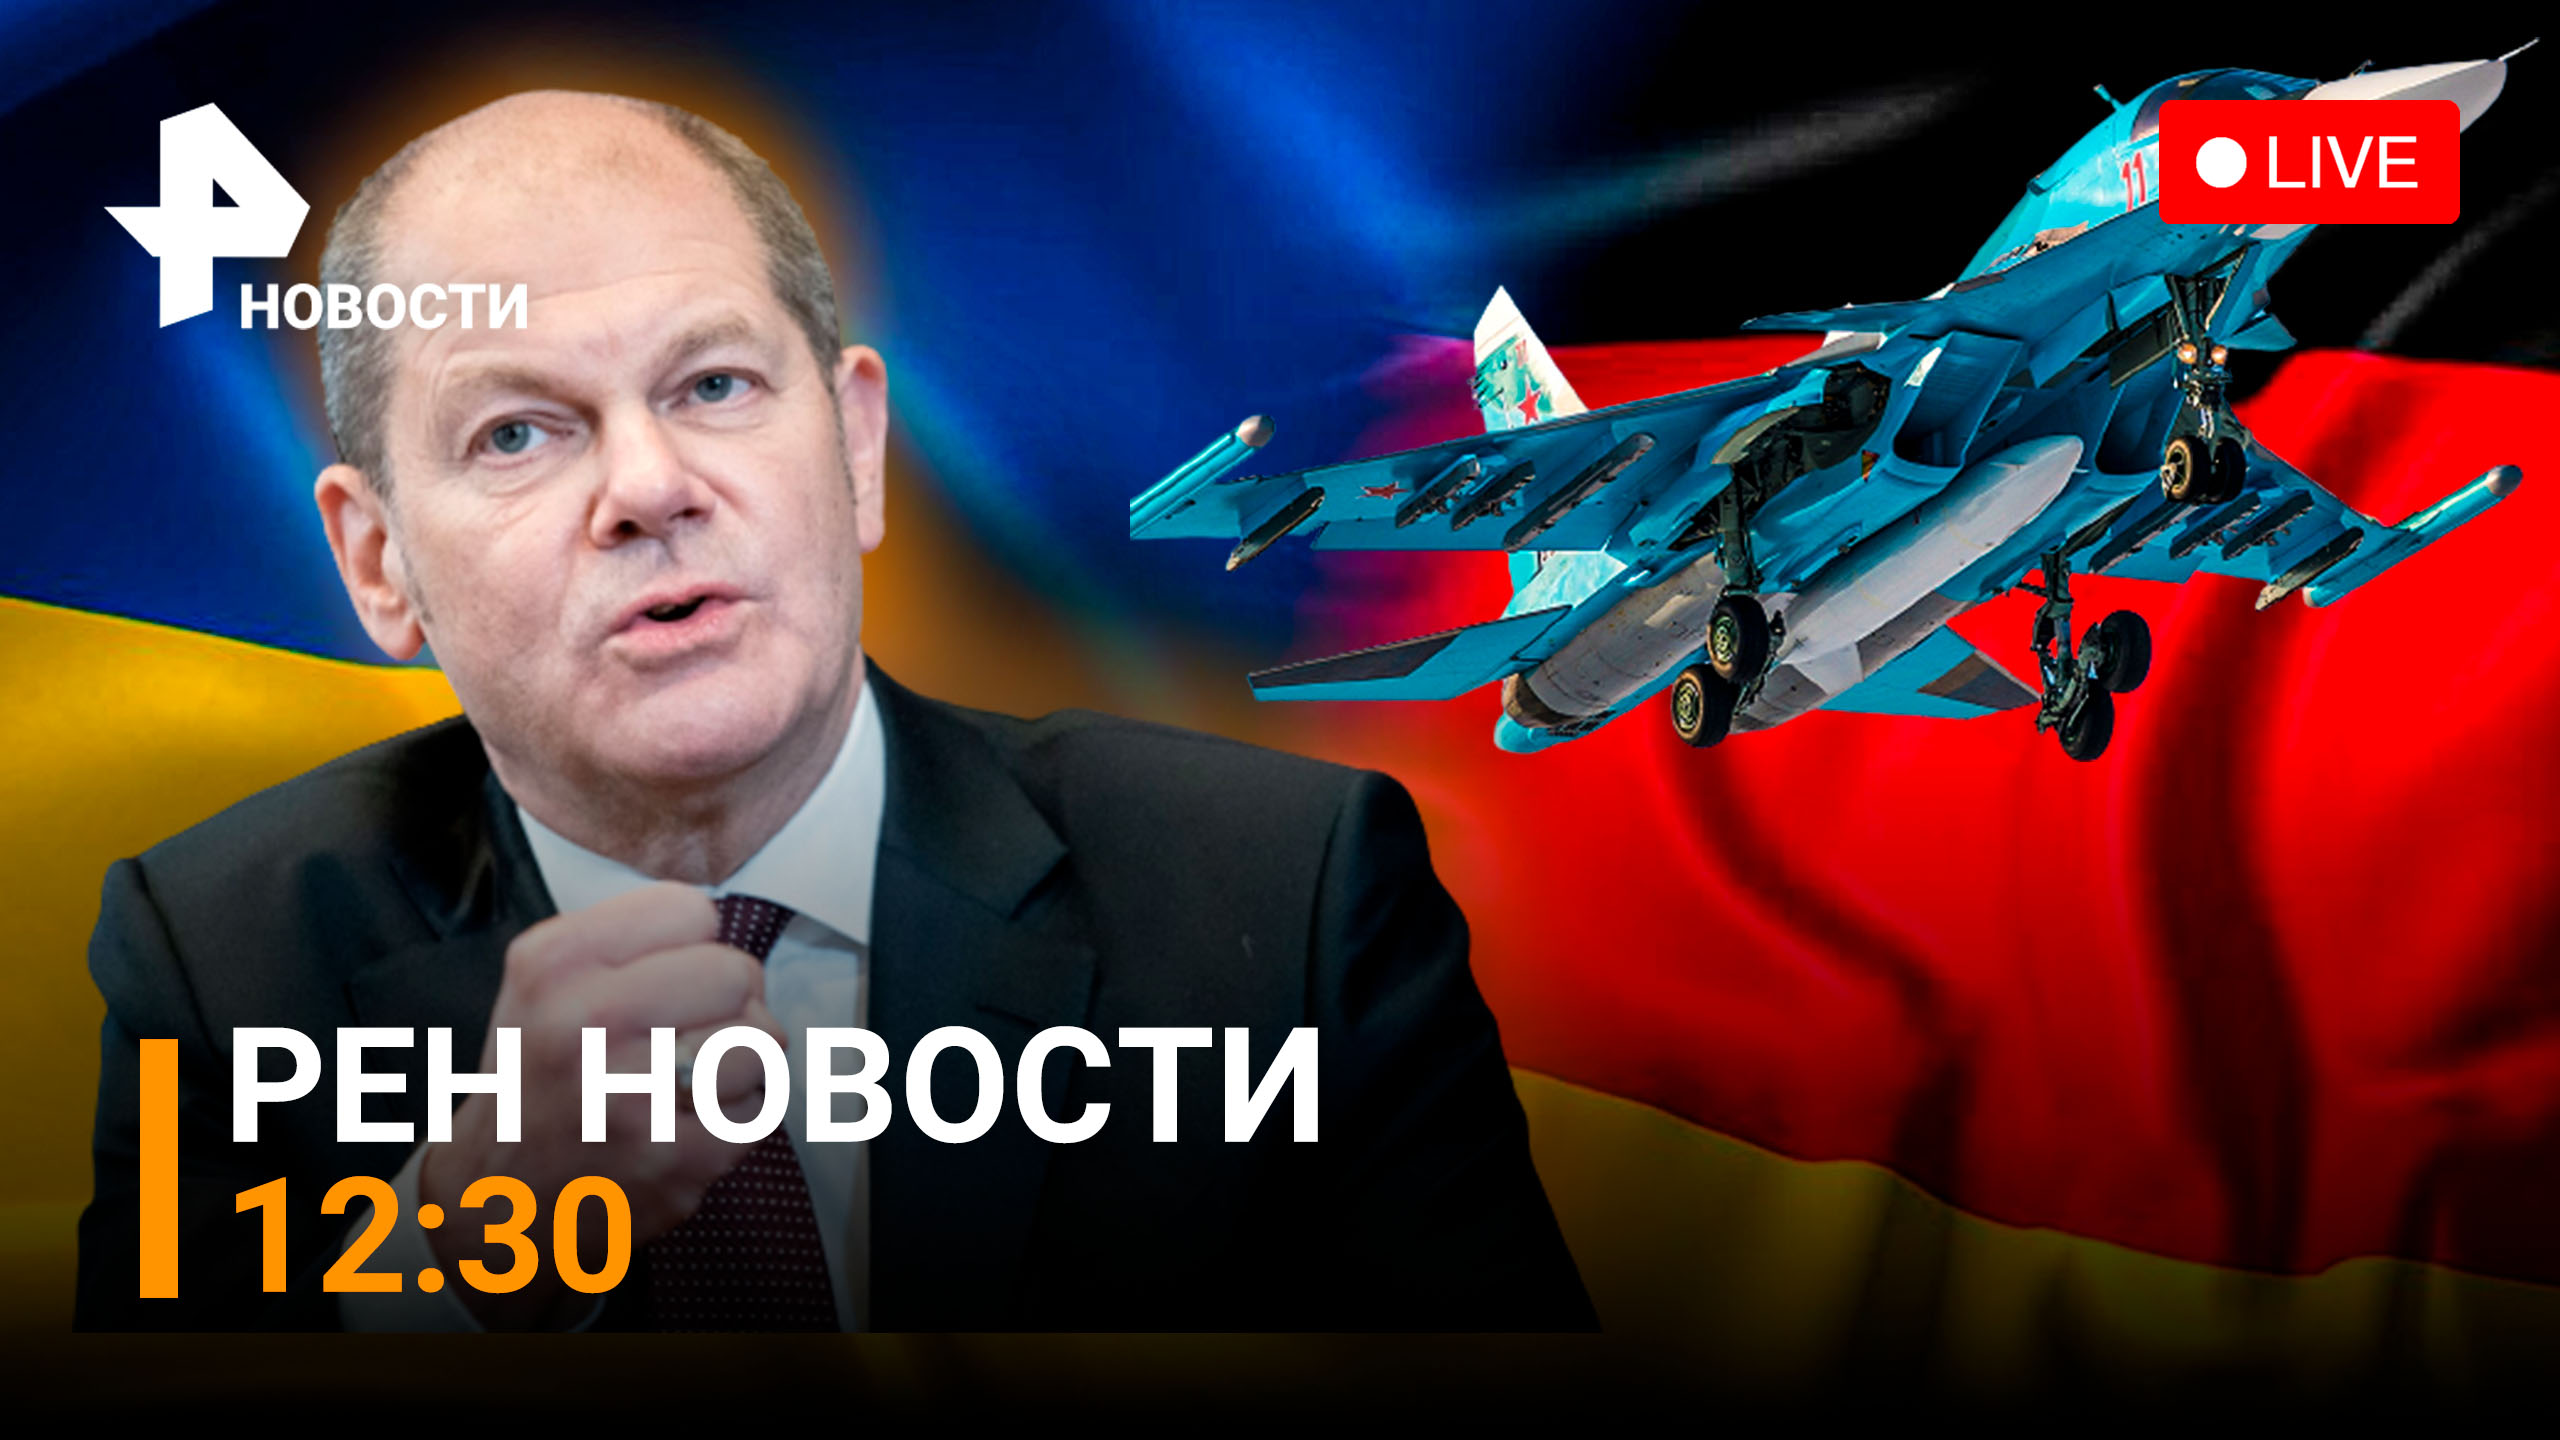 Германия боится поставлять Украине танки. Су-34 зрелищно уничтожили технику ВСУ / РЕН Новости 12:30